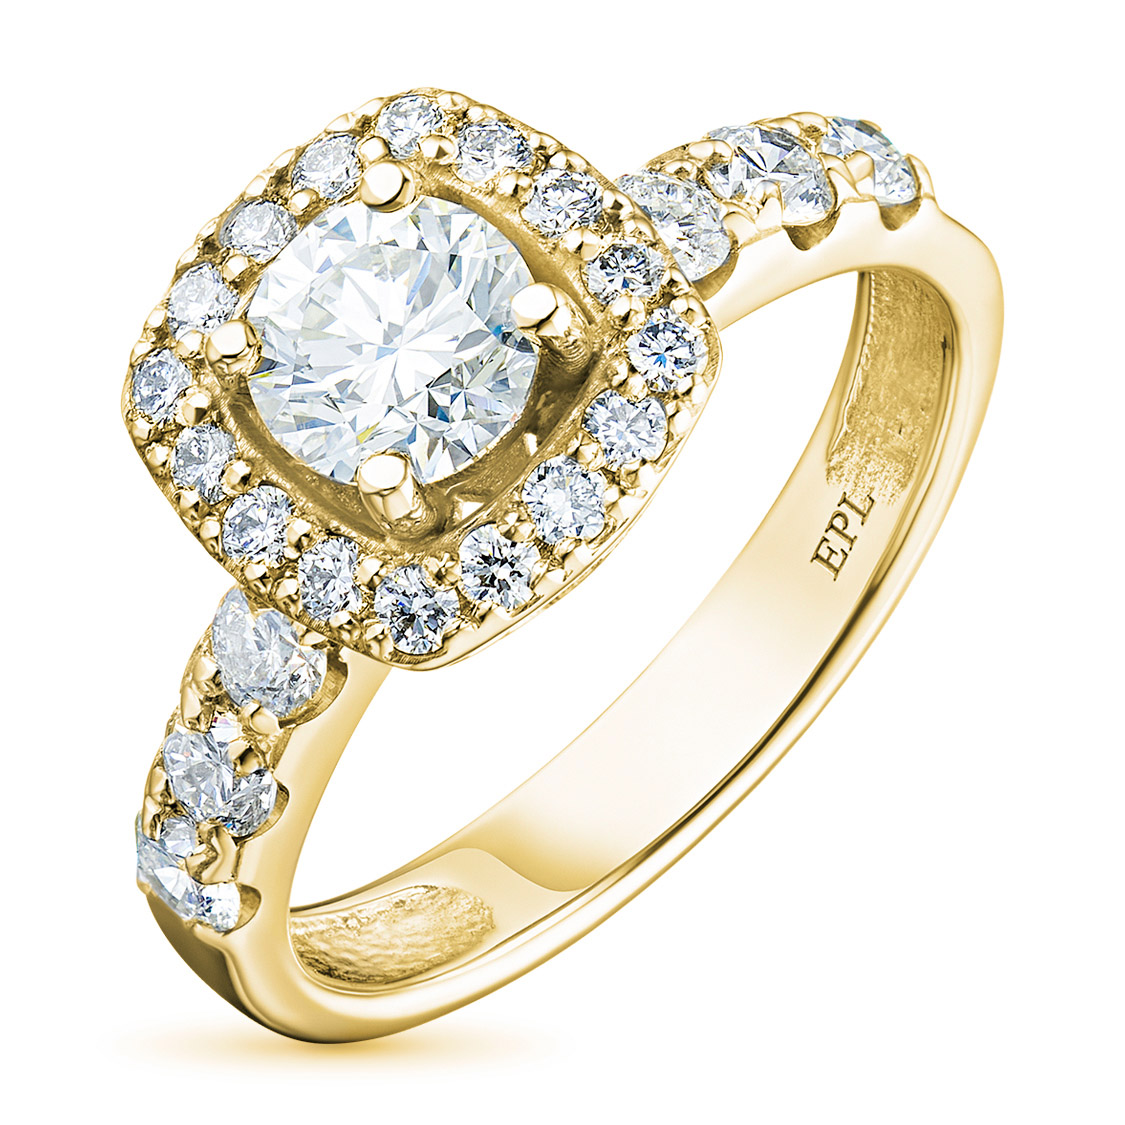 Кольцо золото якутии. Кольцо якутские бриллианты э0201кц02159400. Эпл Даймонд кольцо с бриллиантом. Золотое кольцо с бриллиантами э0901кц07169000. Кольцо эпл с бриллиантом желтое золото.